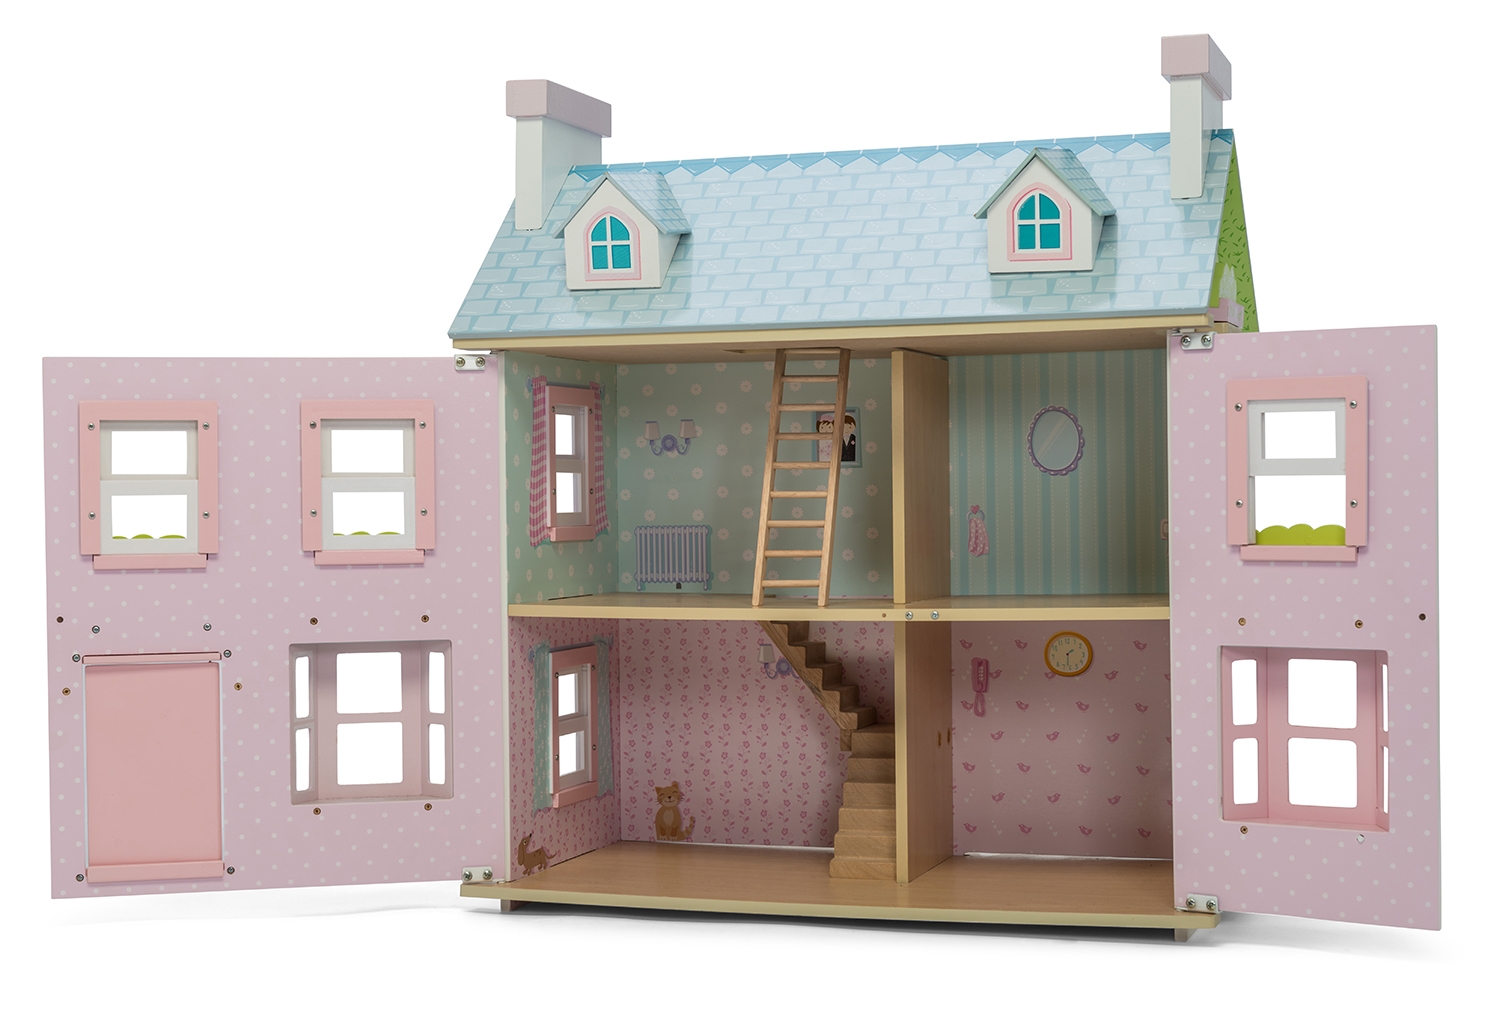 Дом кукол 4. Манор Хаус кукольный дом. Домик Ле той Ван. Le Toy van домик для кукол. Велберис деревянный кукольный домик.